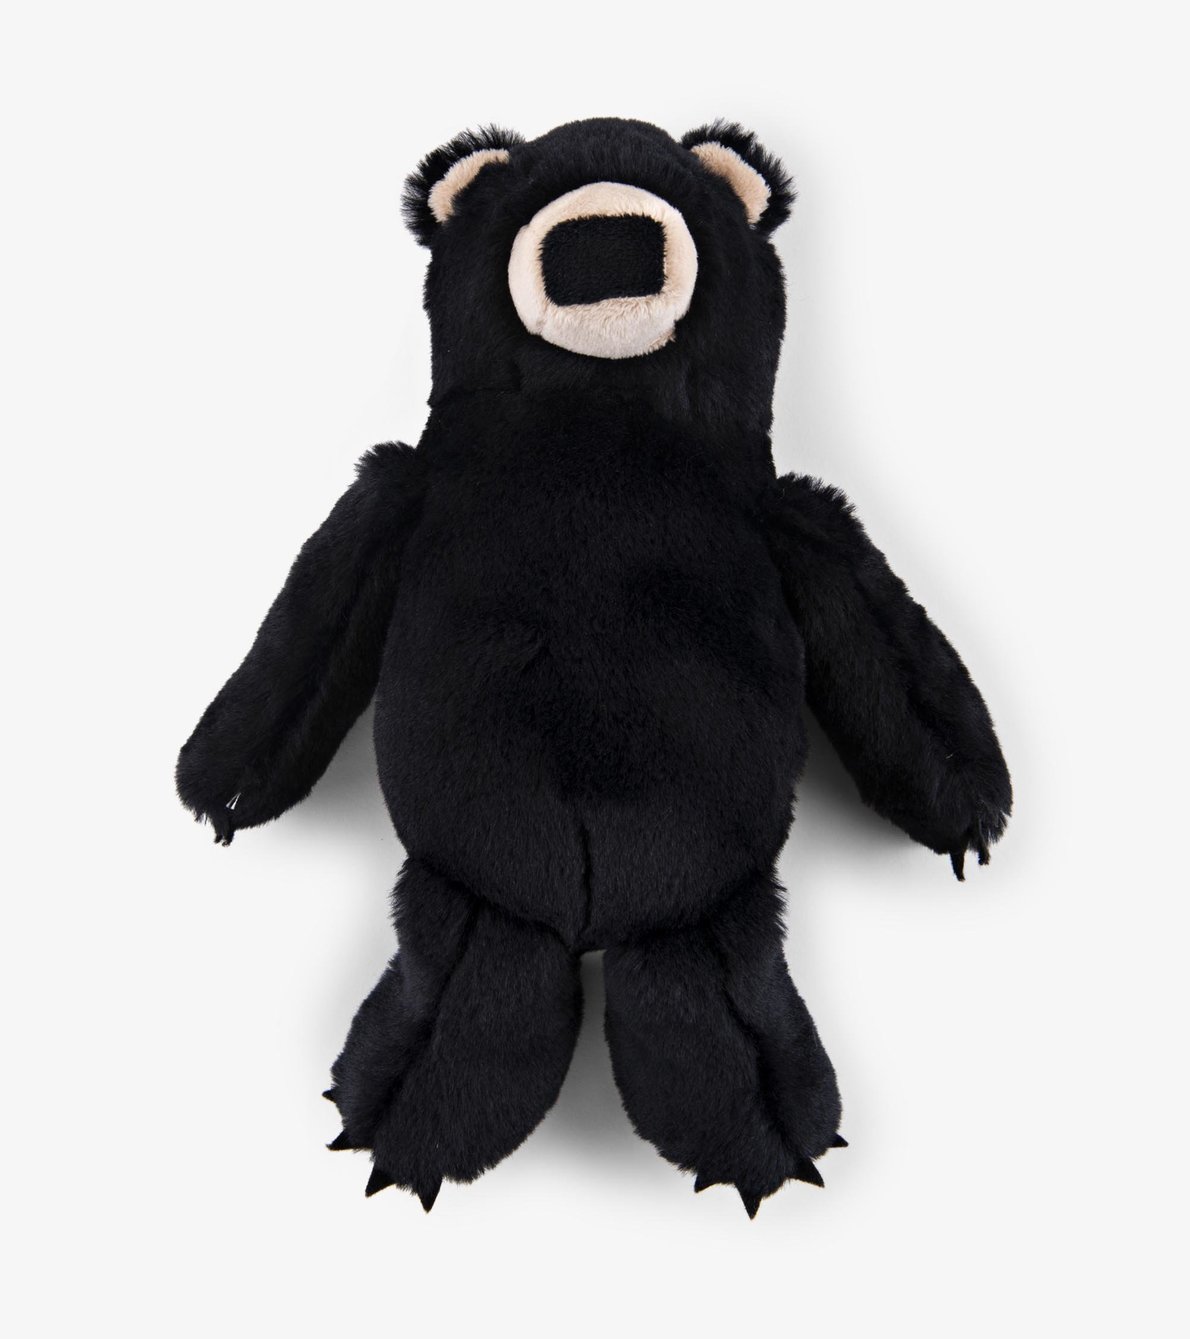 View larger image of Black Bear Plush Animal